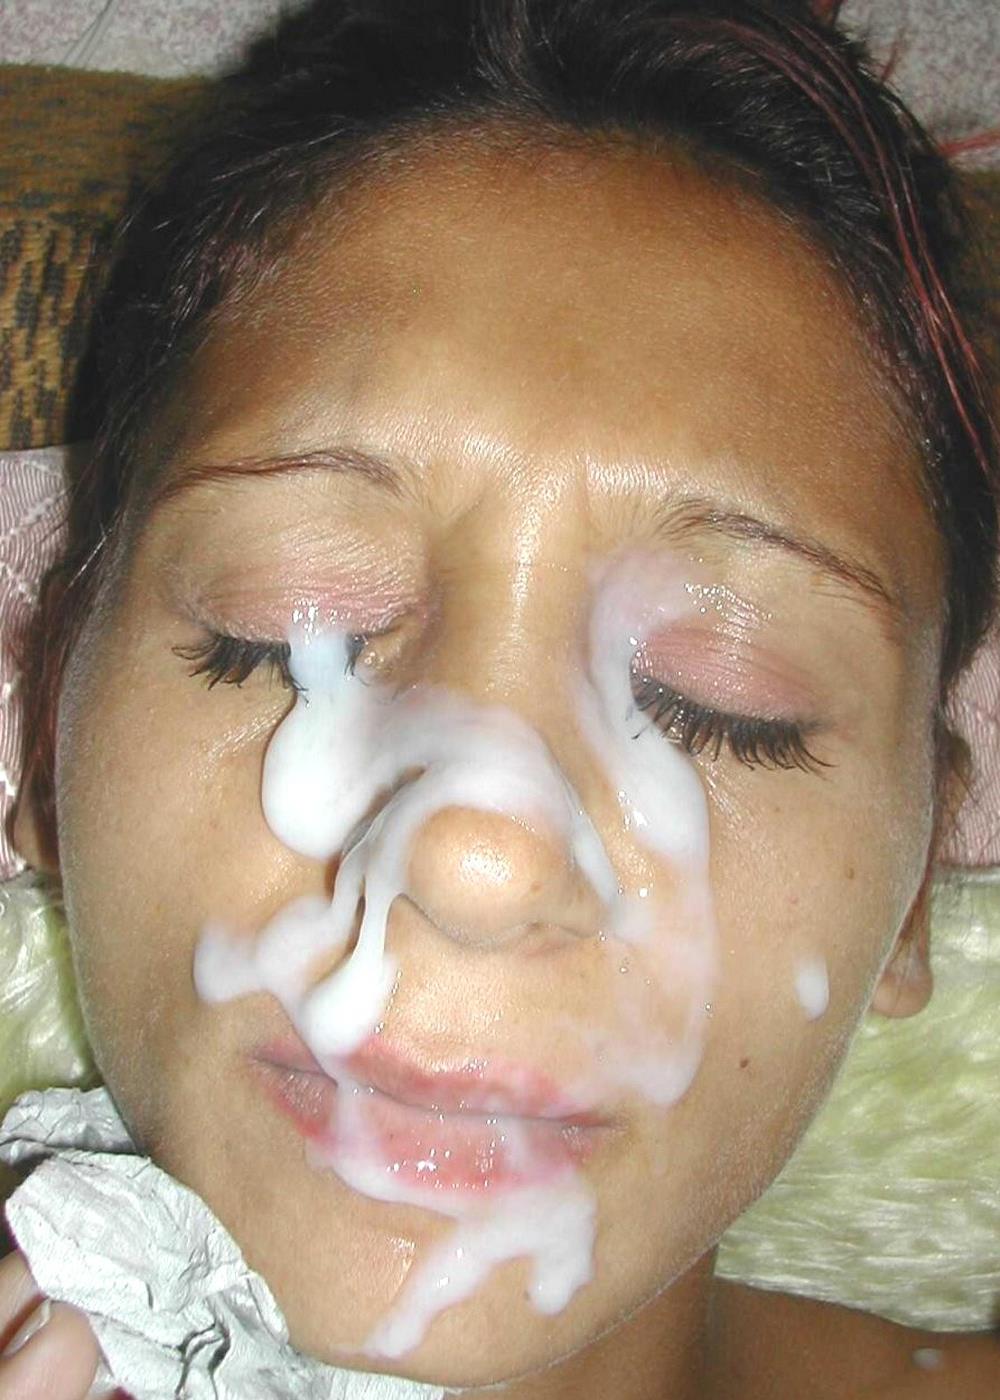 Фото со спермой на лице девушек